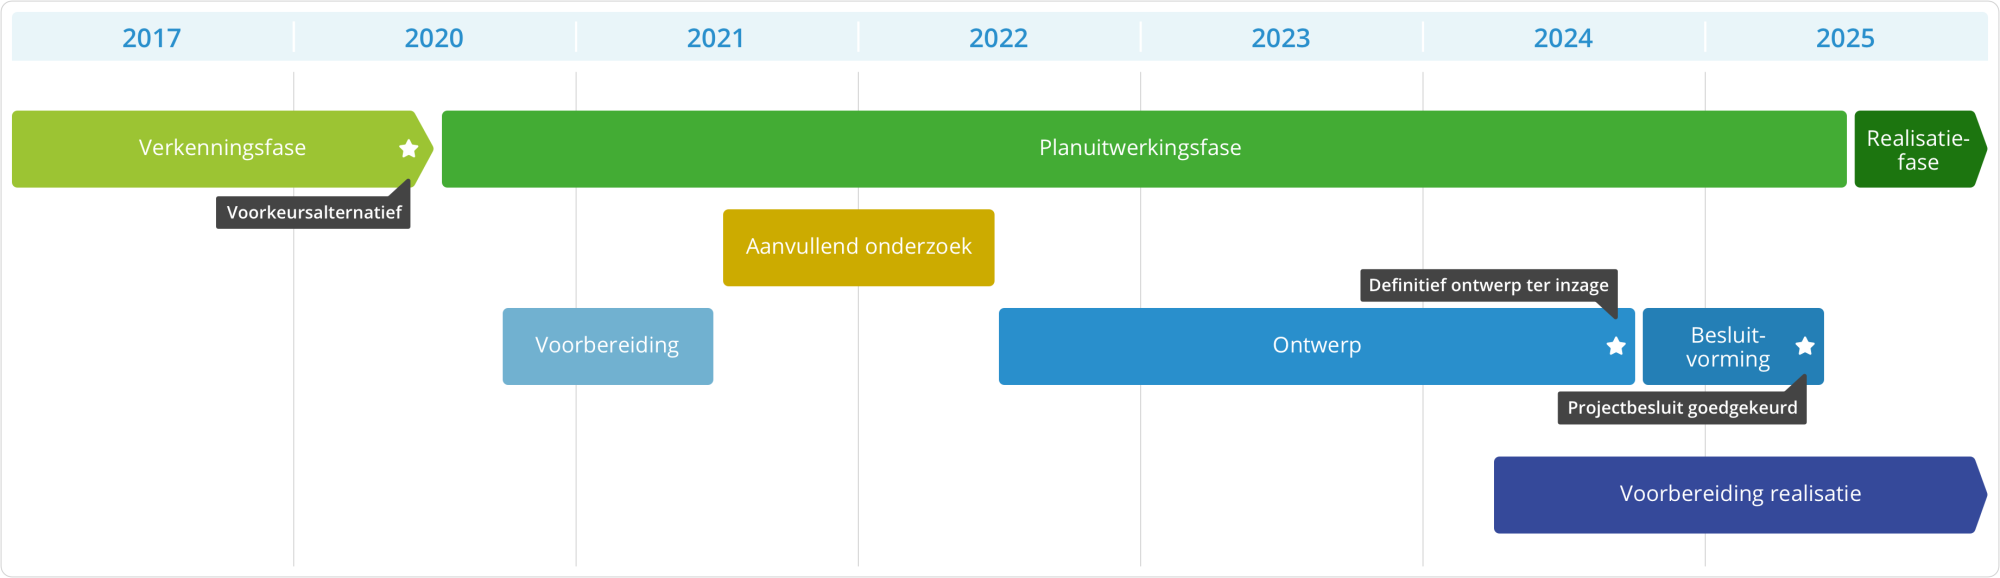 Globale tijdlijn van het project. Tot 2020 verkenningsfase. Van 2020 tot 2025 planuitwerkingsfase waarin ontwerp wordt uitgewerkt. Vanaf 2024 start de voorbereiding voor de realisatie.